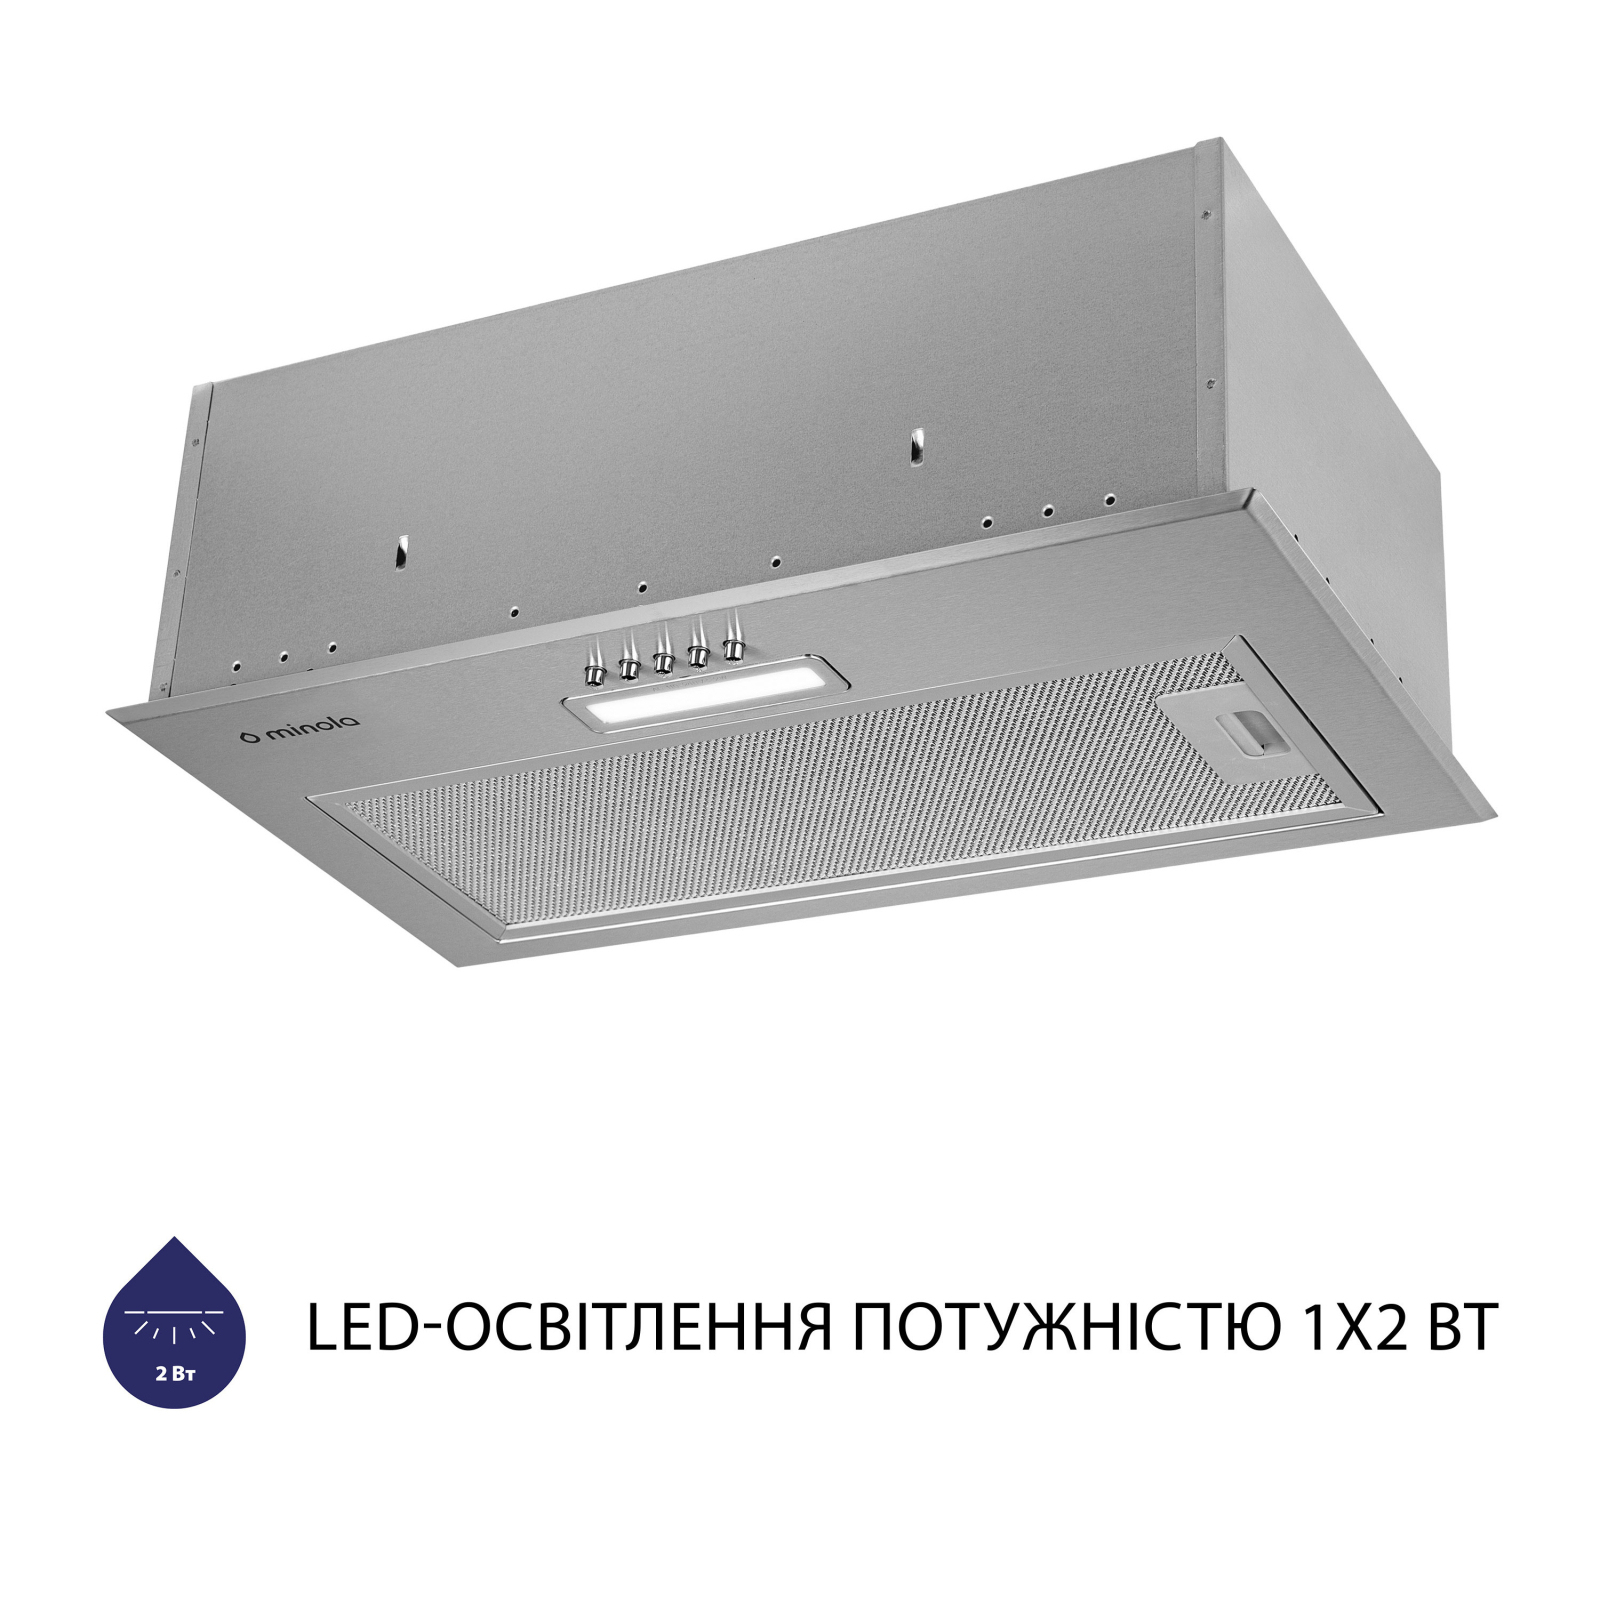 Вытяжка кухонная Minola HBI 5214 I 700 LED изображение 4